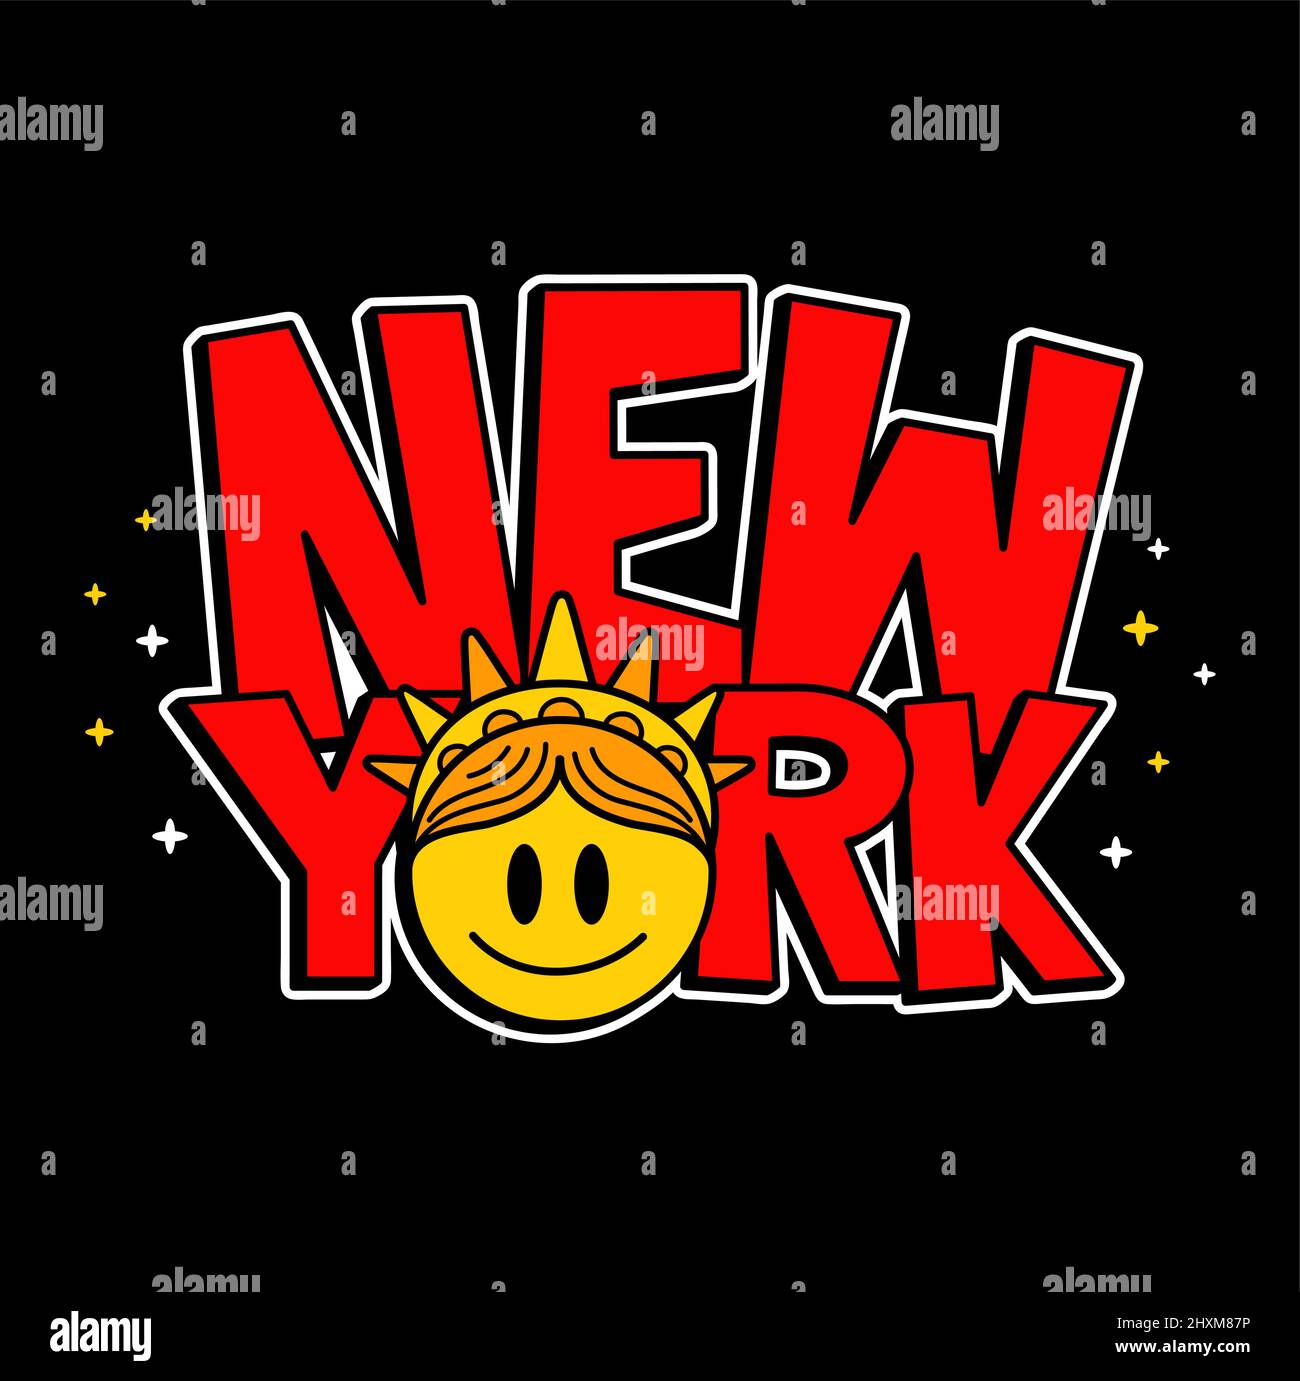 Nueva York cita con la estatua de la libertad sonrisa cara impresión para la camiseta.Vector graffiti art, línea de fideos dibujos animados carácter ilustración.Estatua de la Libertad, NY, Nueva York imprimir para la camiseta, póster, etiqueta concepto Ilustración del Vector